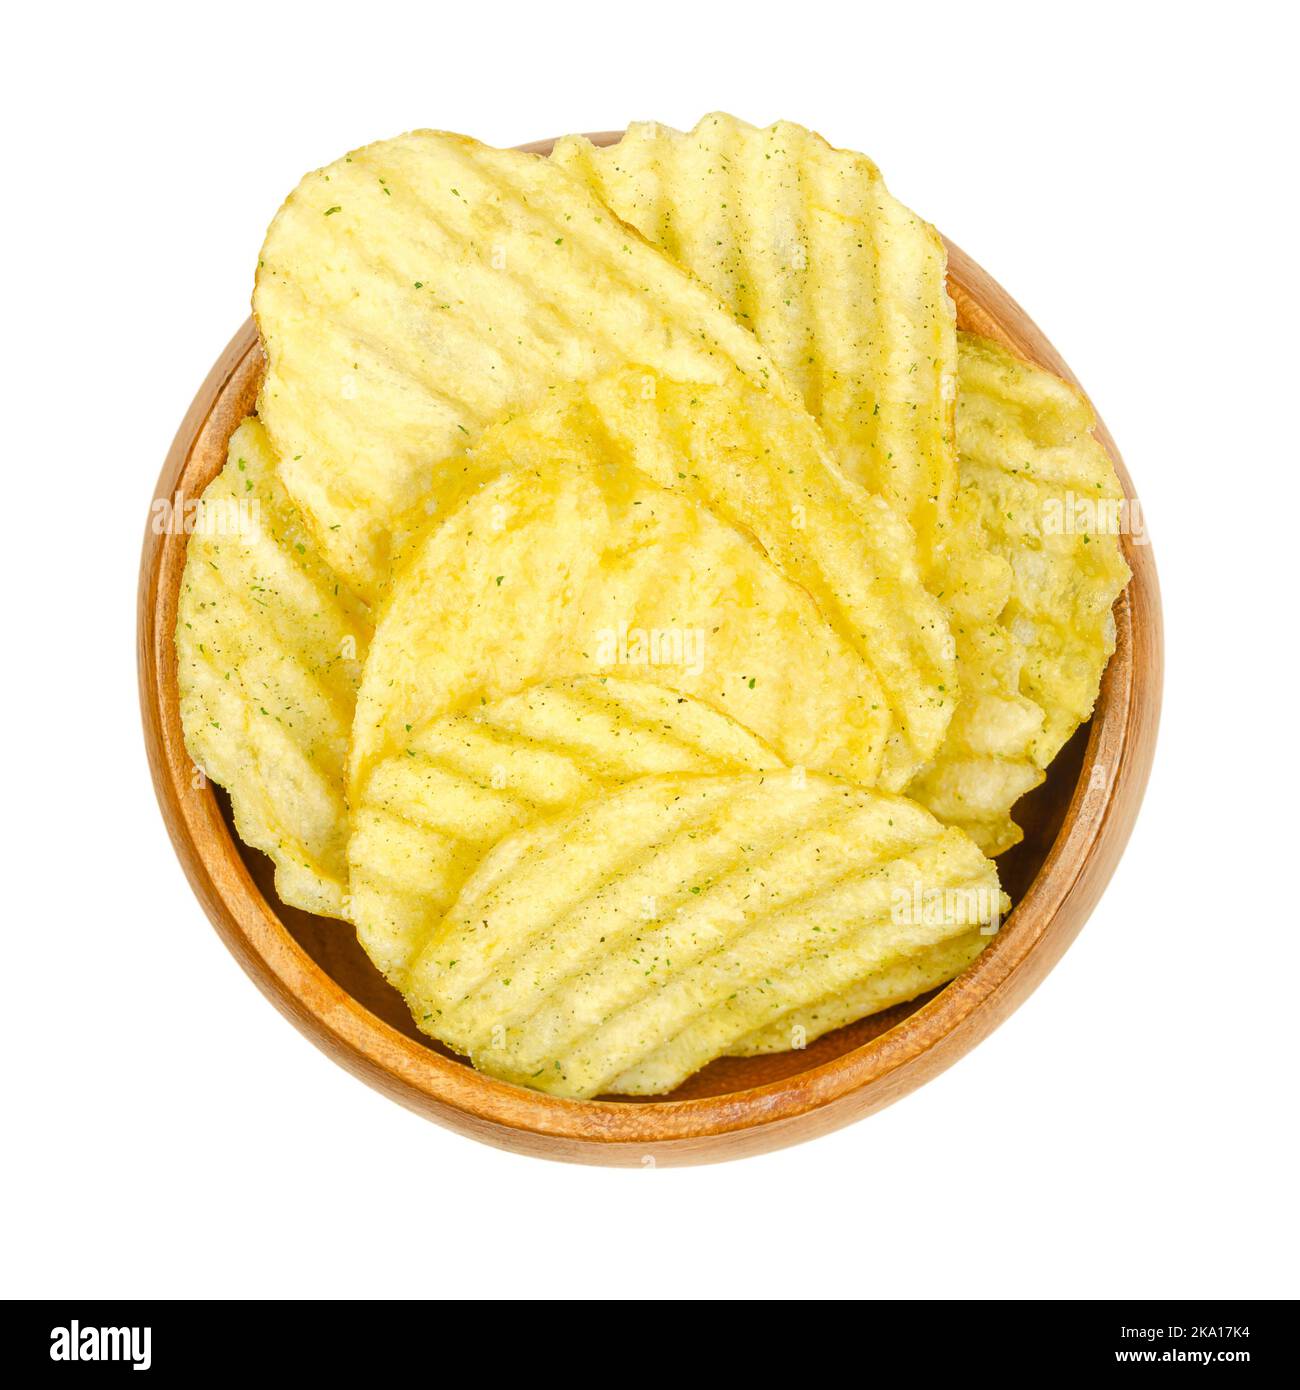 Dans un bol en bois, on y trouve des truffes salées, des chips de pommes de terre à volants, aromatisées au wasabi et au nori. Pommes de terre coupées en purée, frites profondes. Banque D'Images